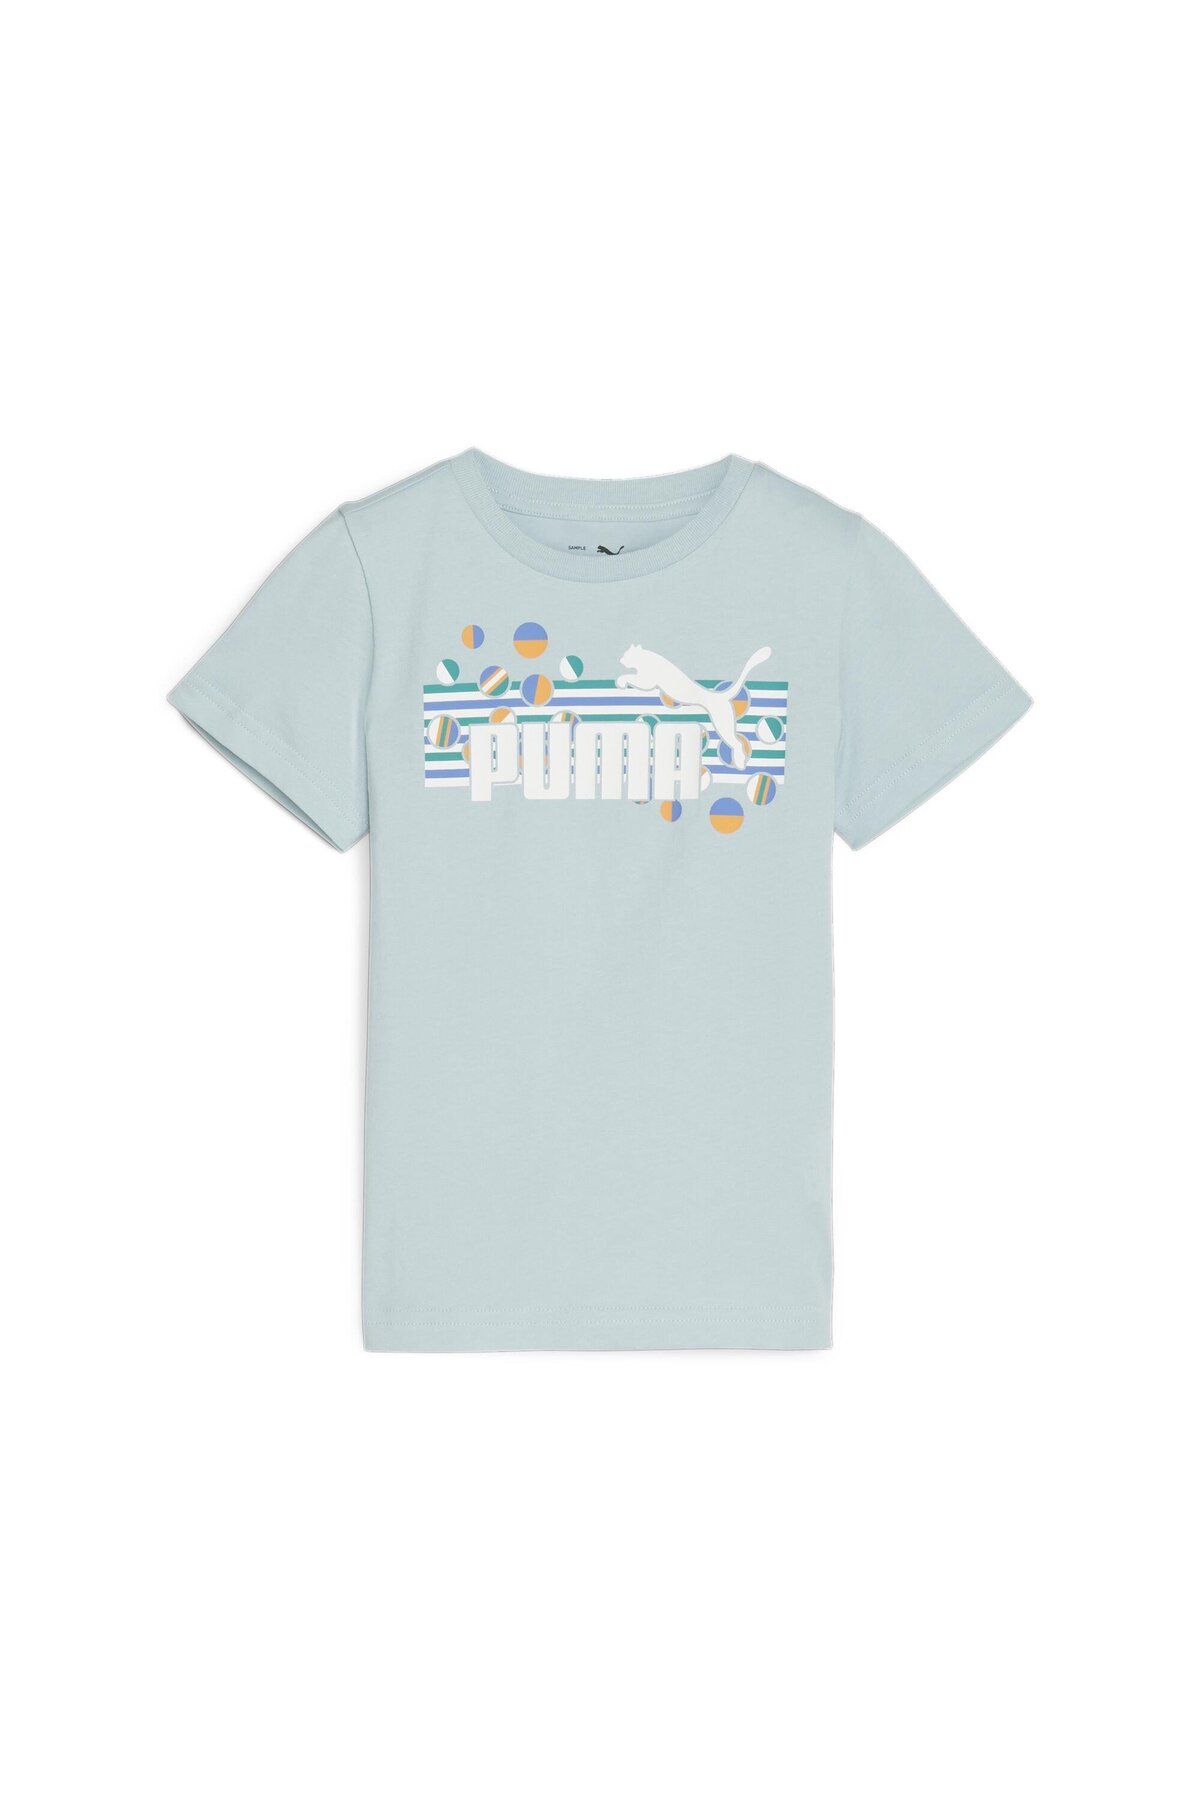 Puma Ess+ Summer Camp Tee Çocuk T-shirt